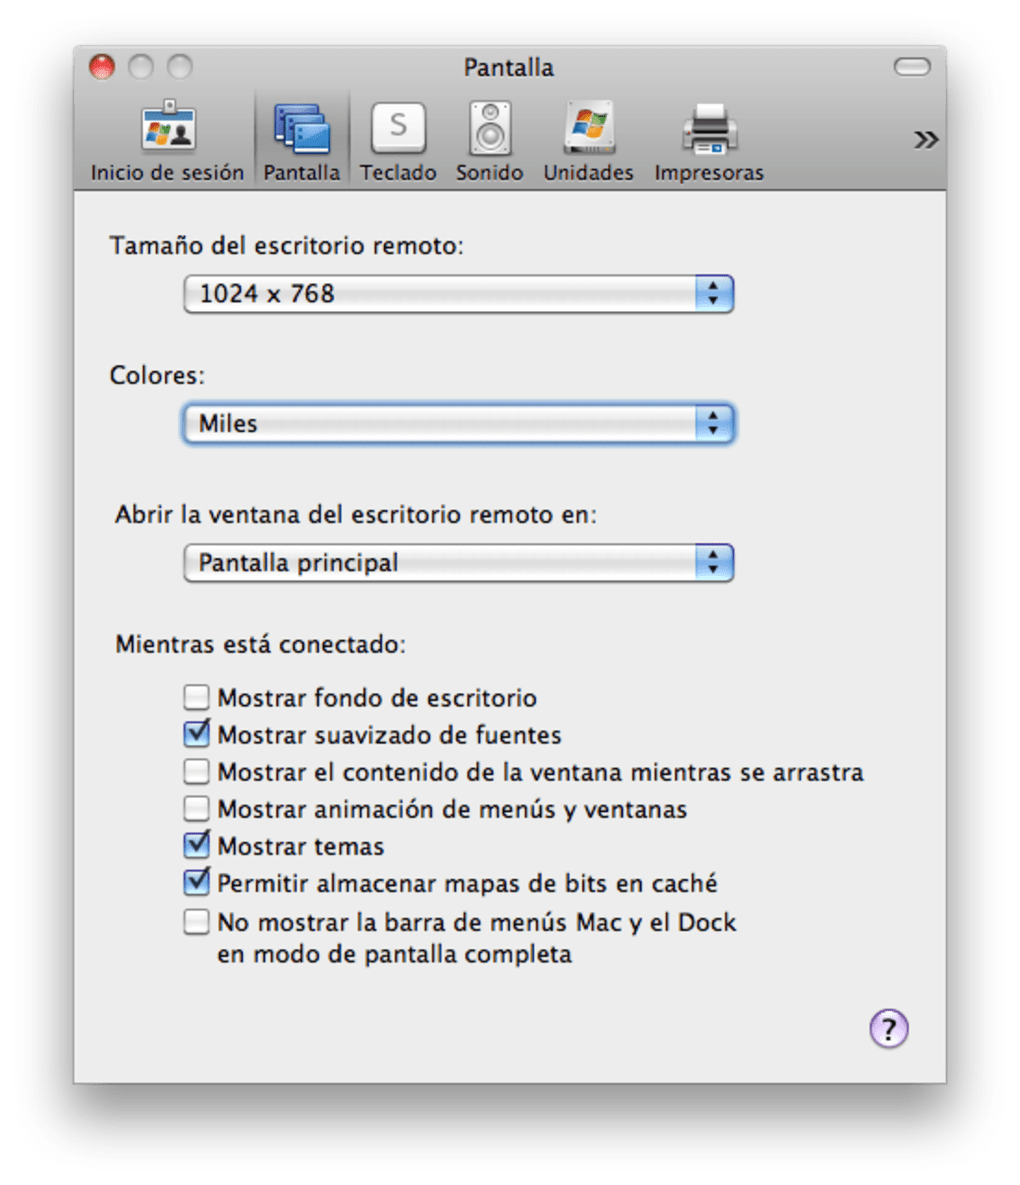 microsoft remote desktop connection client for mac version 2.1.2